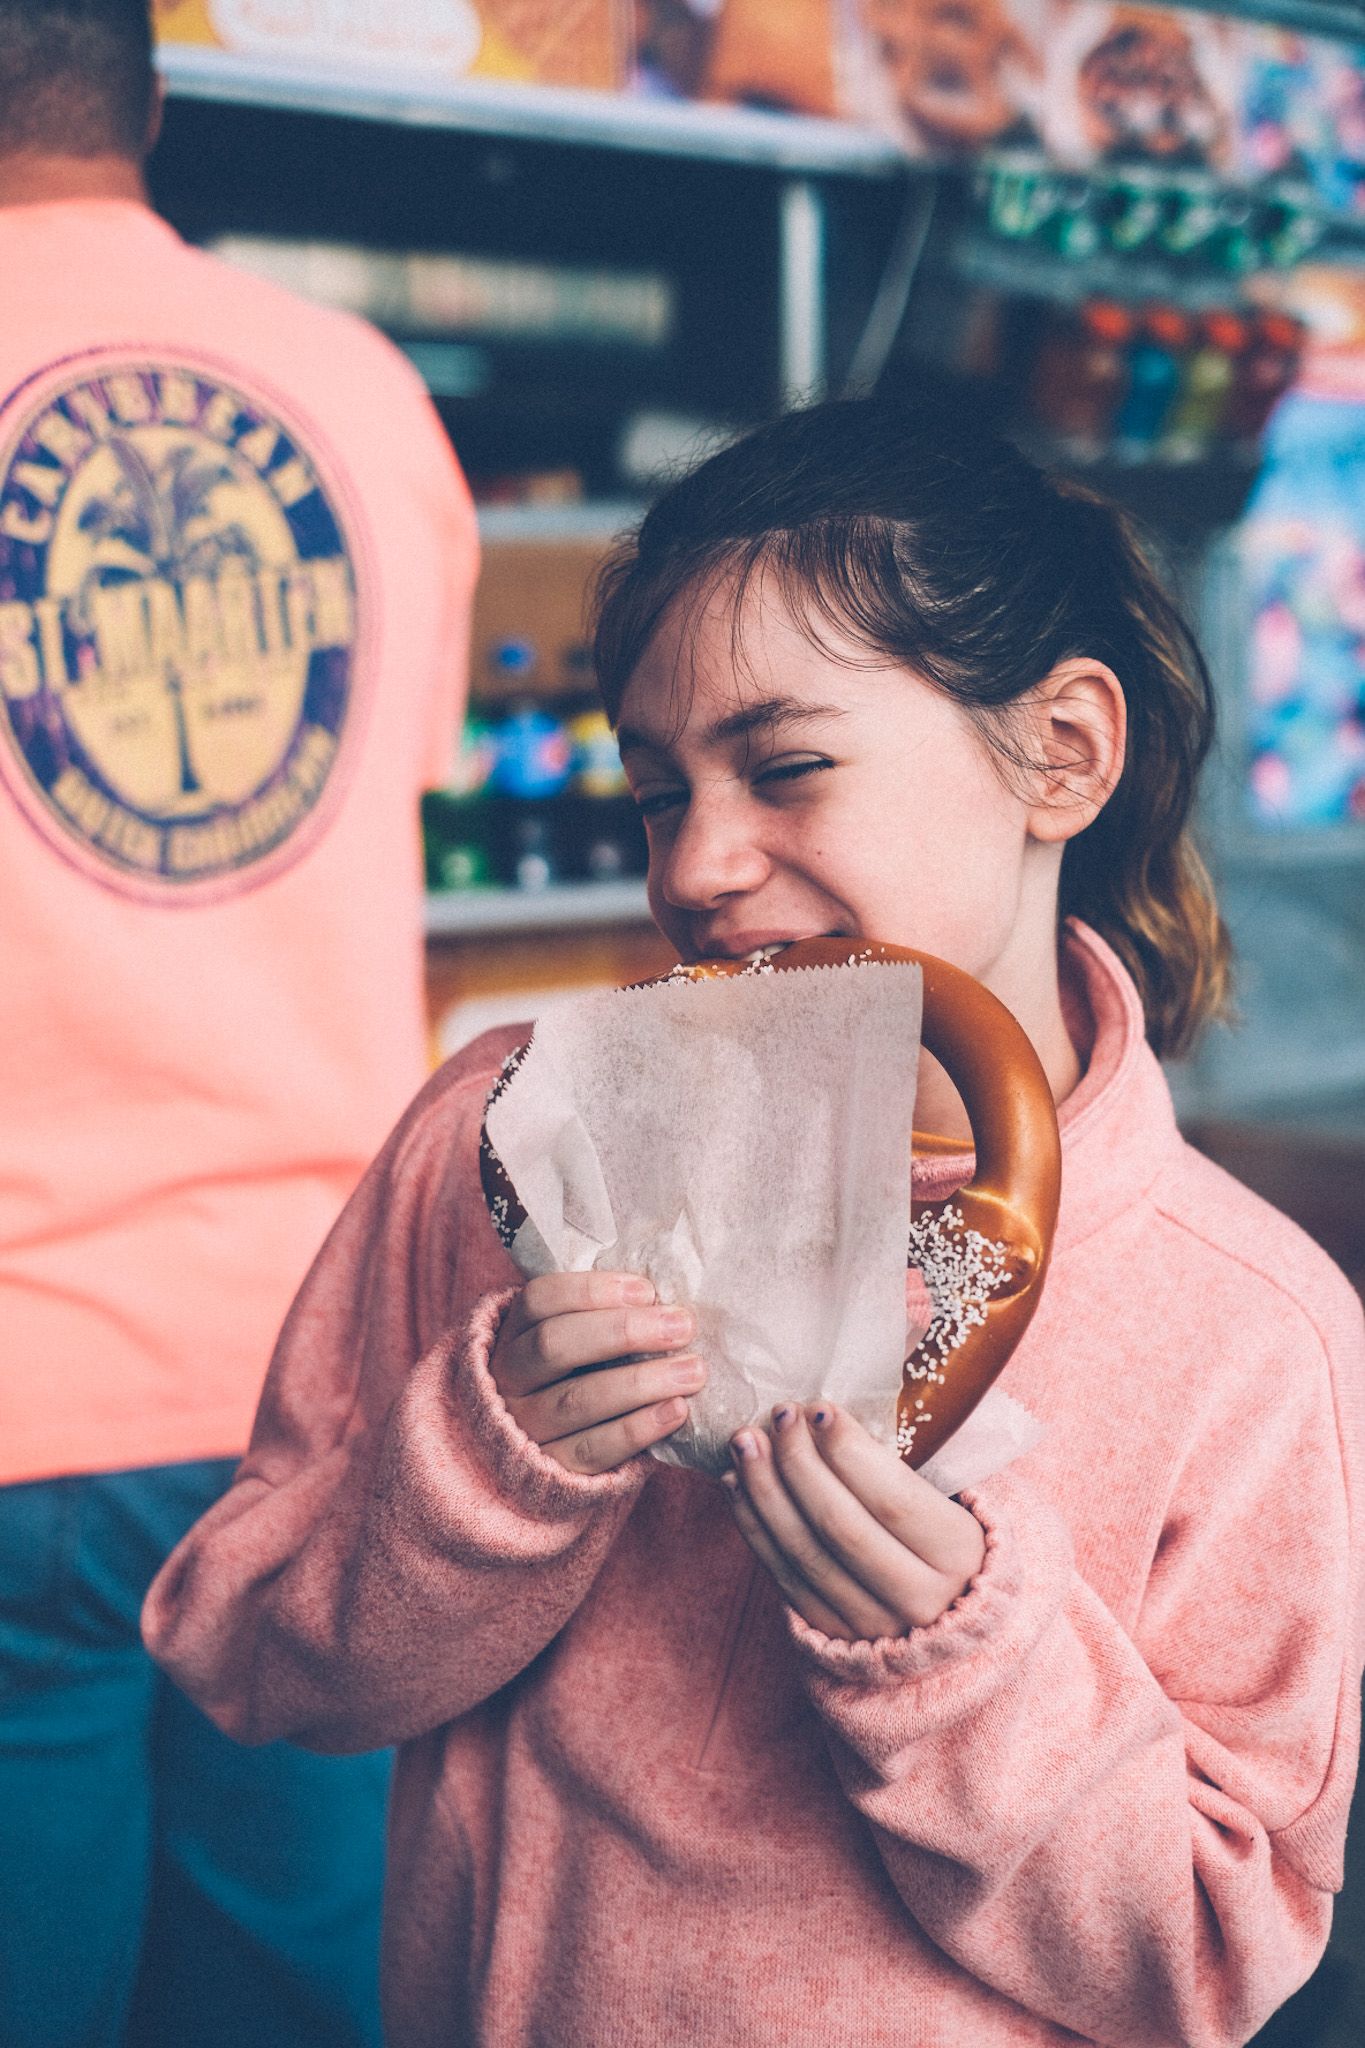 A girl eats a pretzel from a street cart.